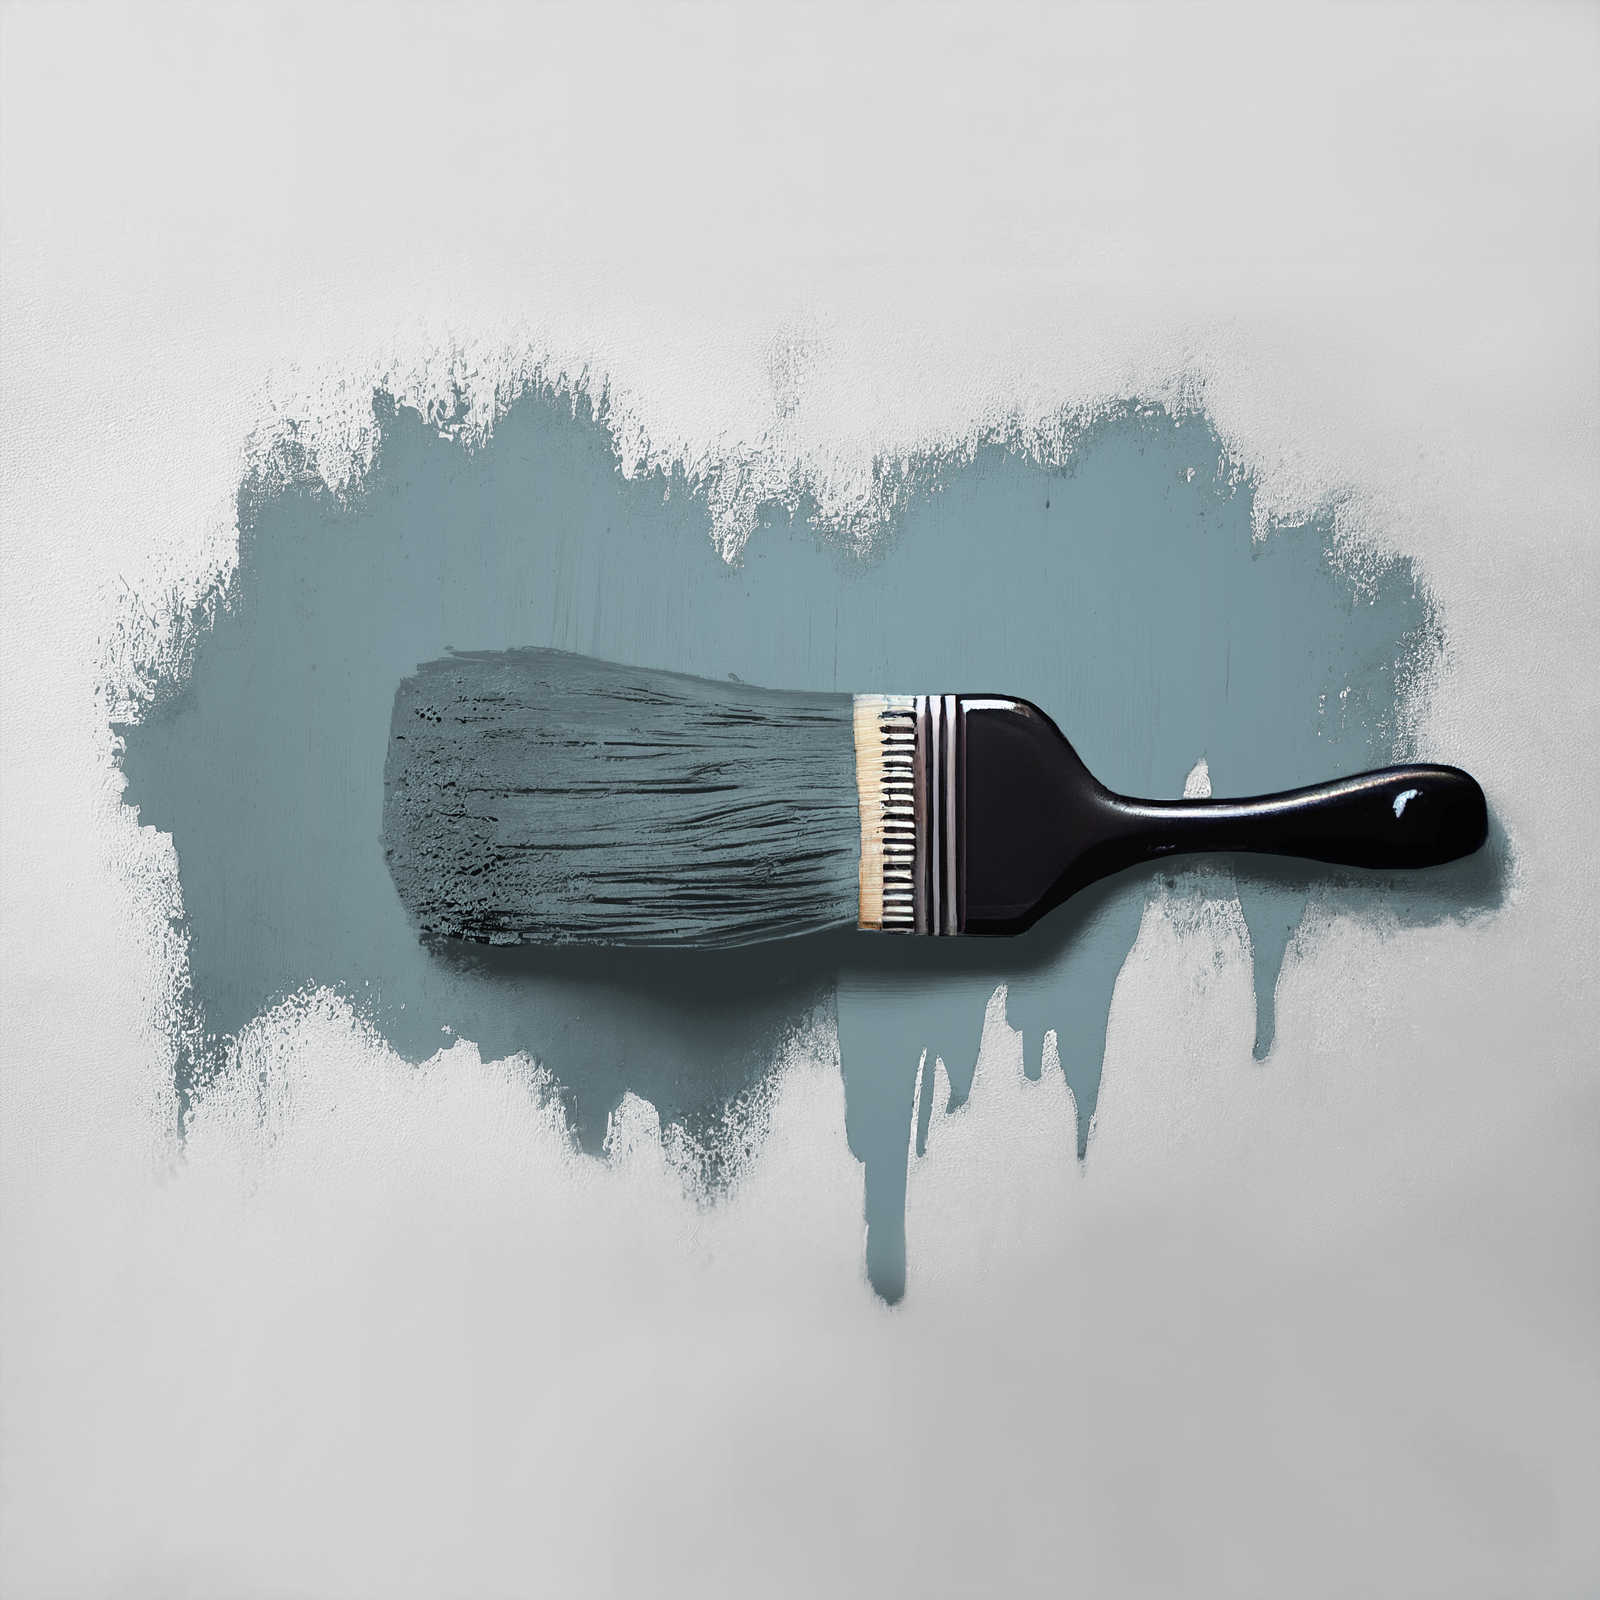             Pittura murale TCK3010 »Typical Trout« in grigio-azzurro – 2,5 litri
        